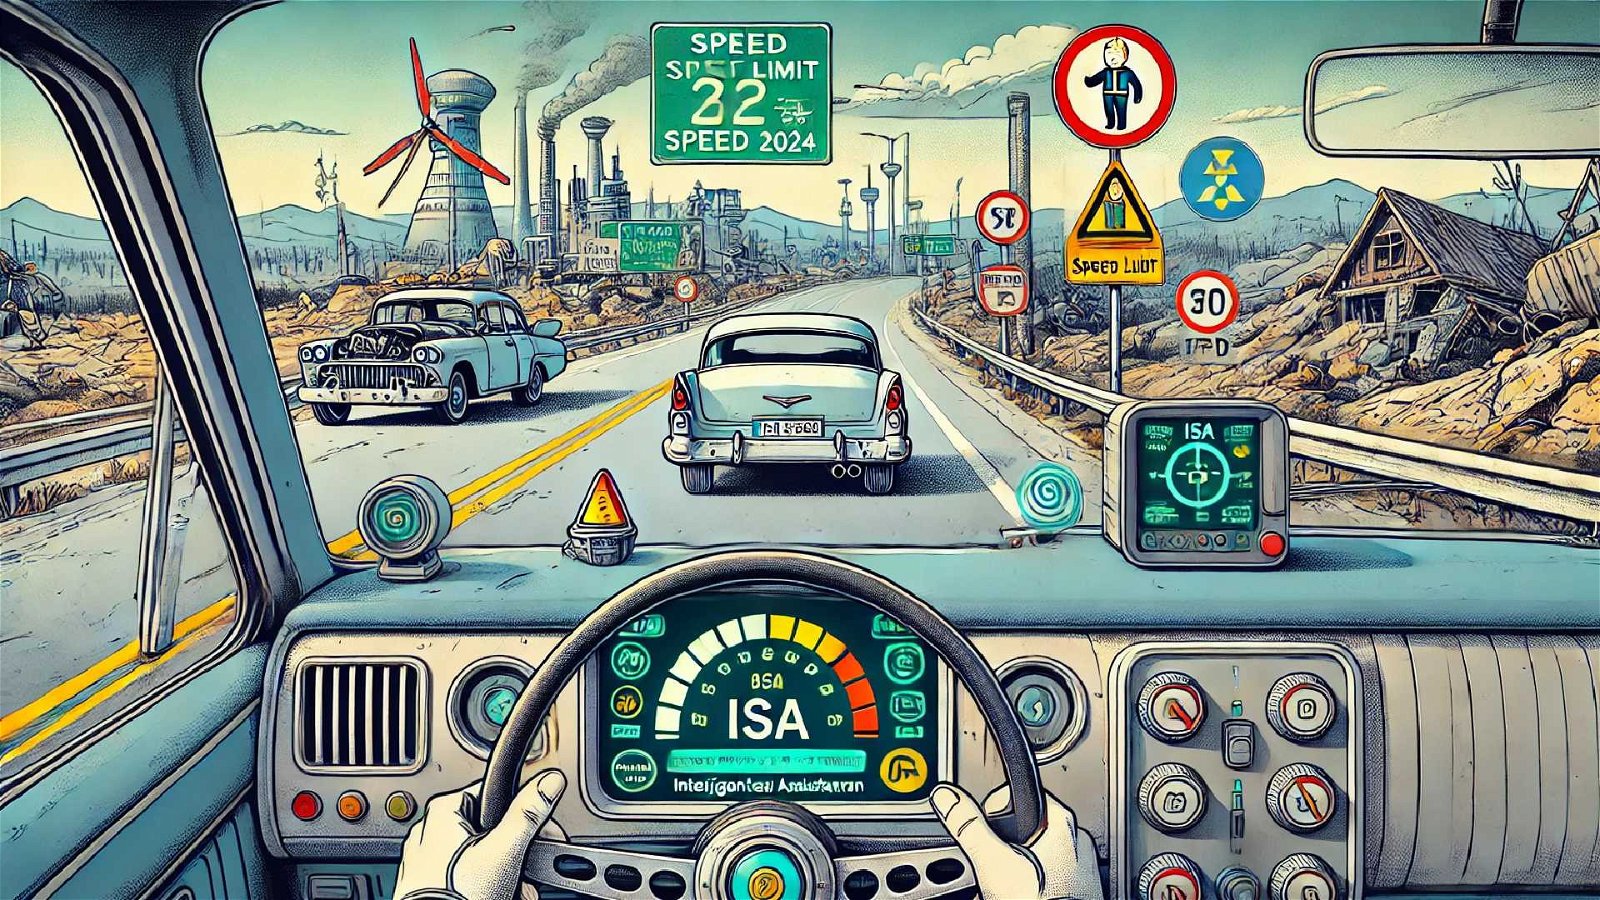 Immagine di Limitatore di velocità obbligatorio nelle auto da luglio: ecco come funziona e cosa cambia